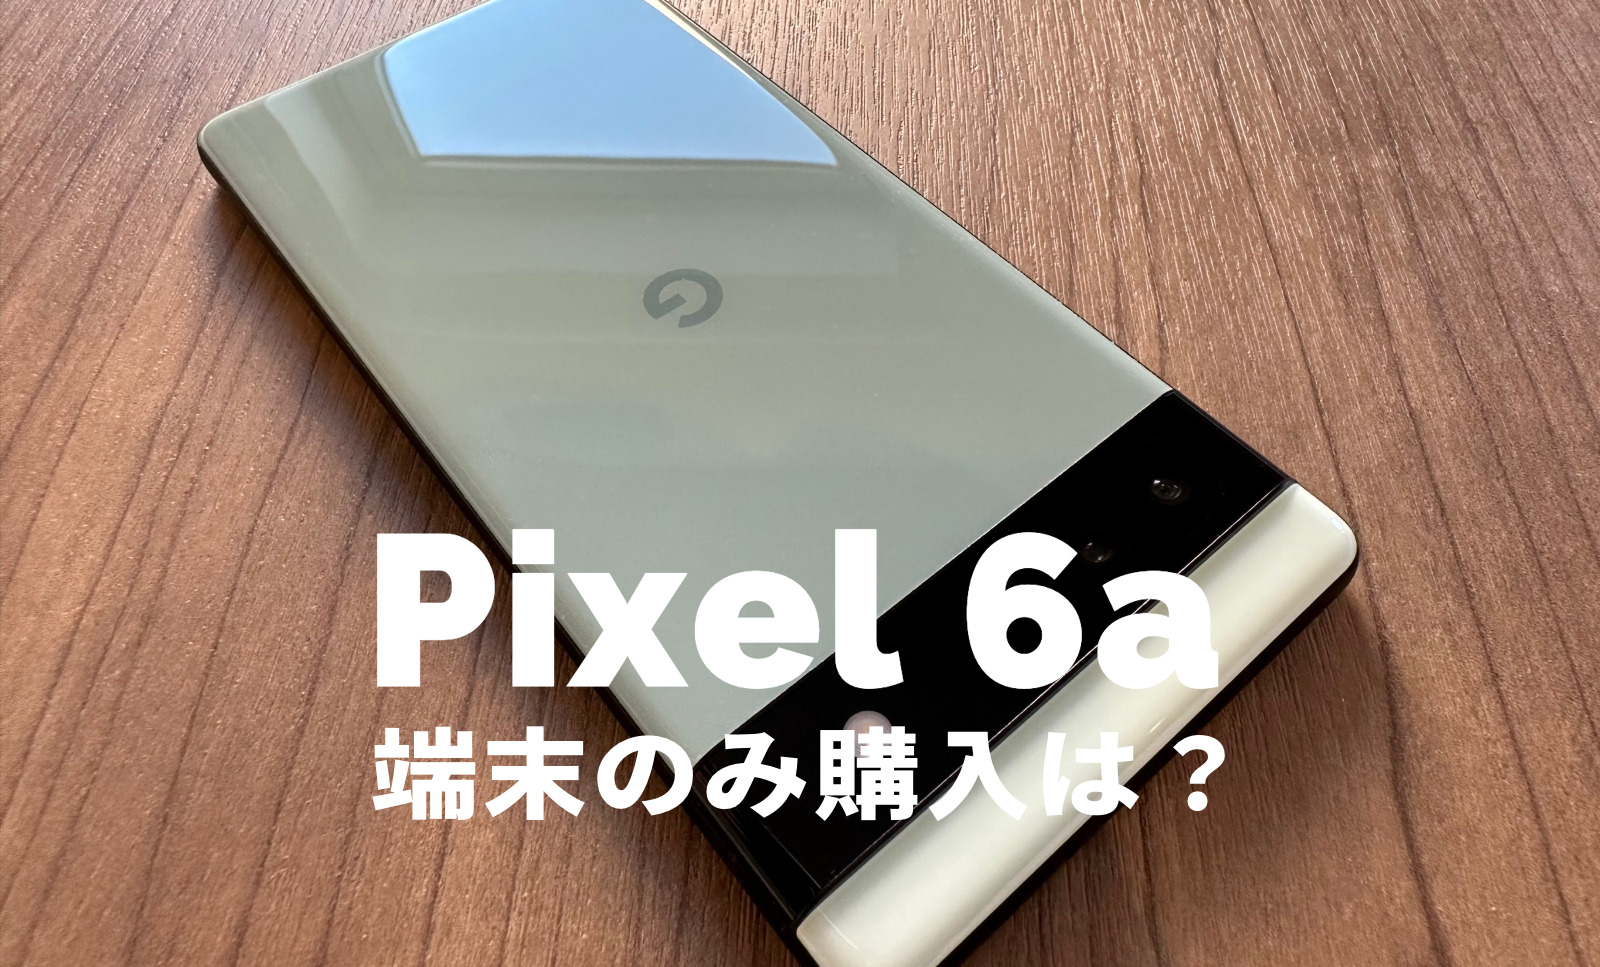 Google Pixel 6aを端末のみ購入&機種のみ欲しい&安く買いたい！【ピクセル6a】のサムネイル画像